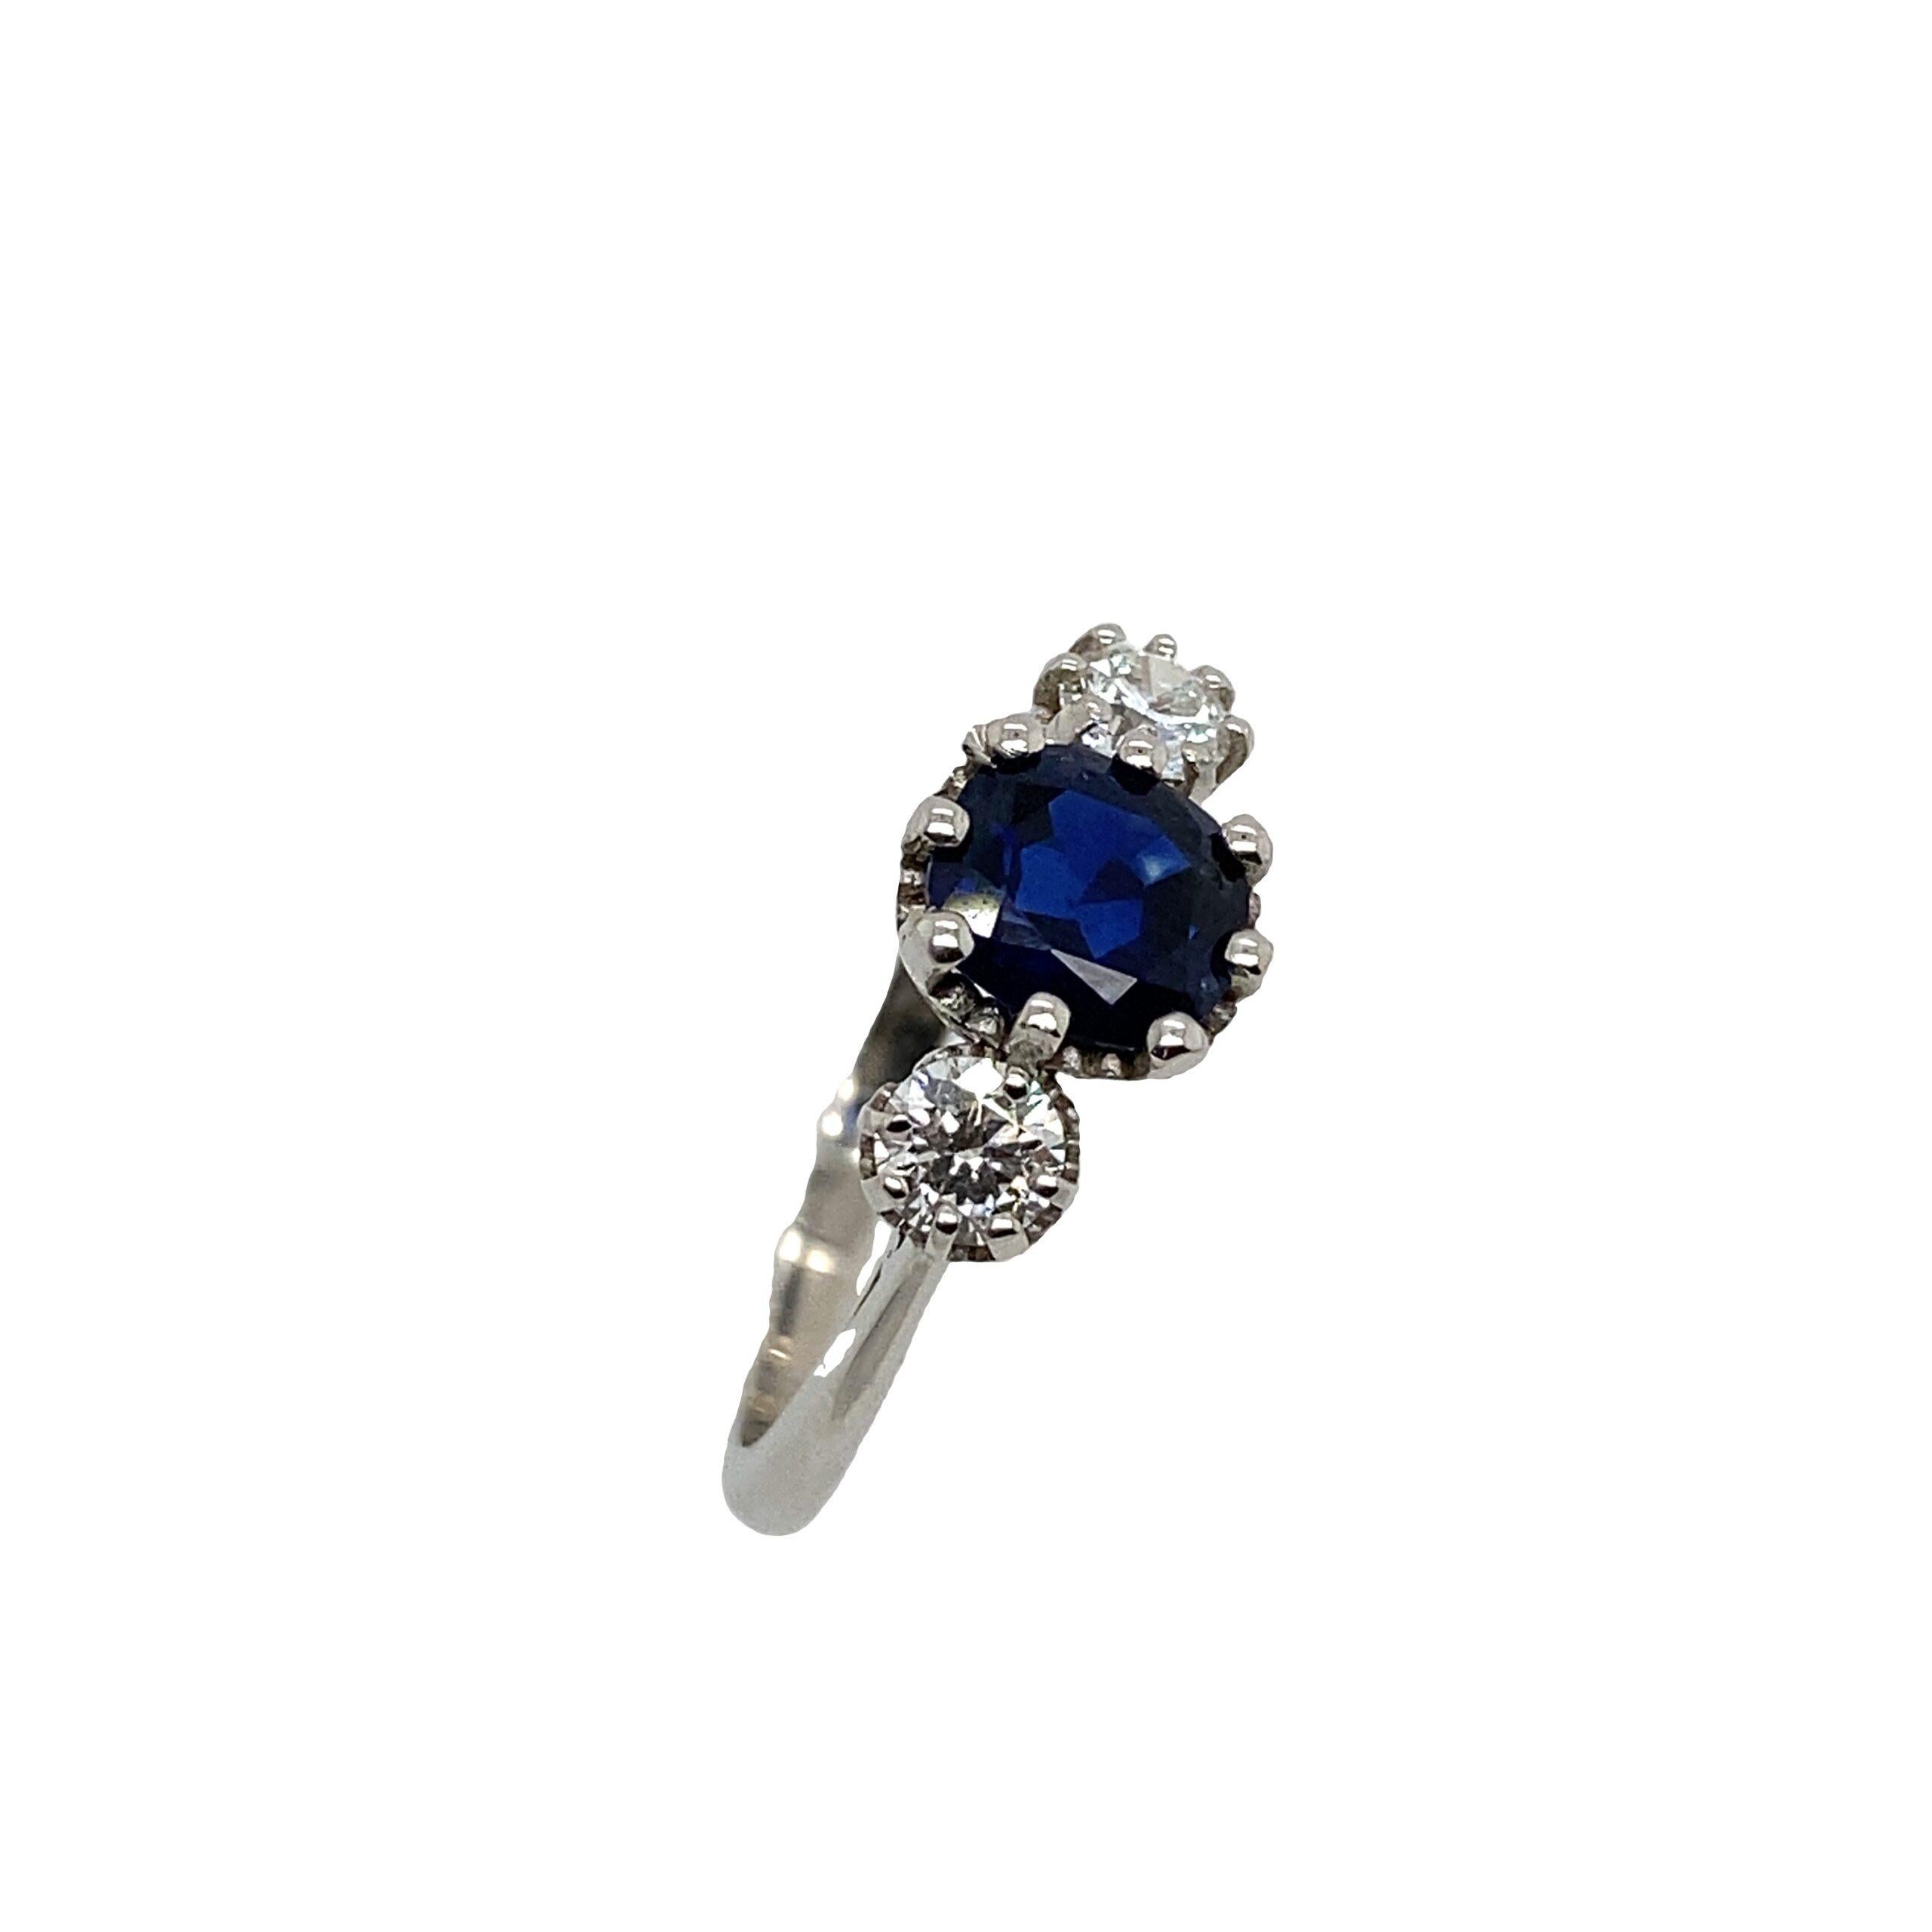 Platin 3 Stein sehr feinsten blauen 1,06ct Saphir Ring mit 0,39ct von Diamanten

Zusätzliche Informationen:
Sapphire kommt aus Thailand
Gesamtgewicht der Diamanten: 0,39ct
Farbe des Diamanten: G
Diamant Reinheit: VS
Gesamtgewicht: 3.9g Ringgröße: M